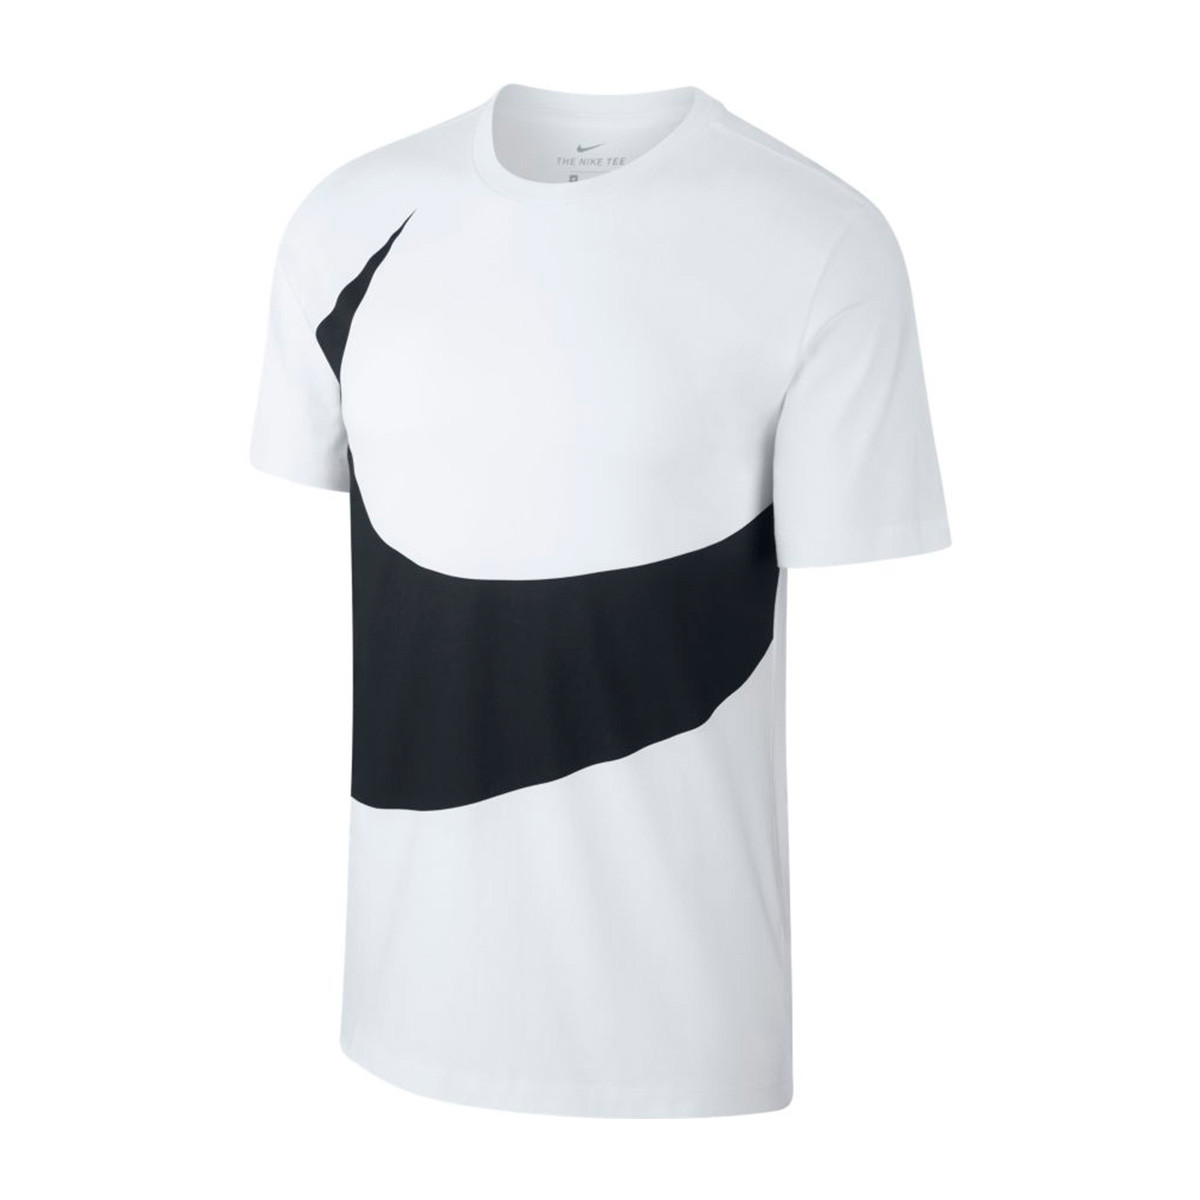 Jersey Nike Sportswear Swoosh 2019 